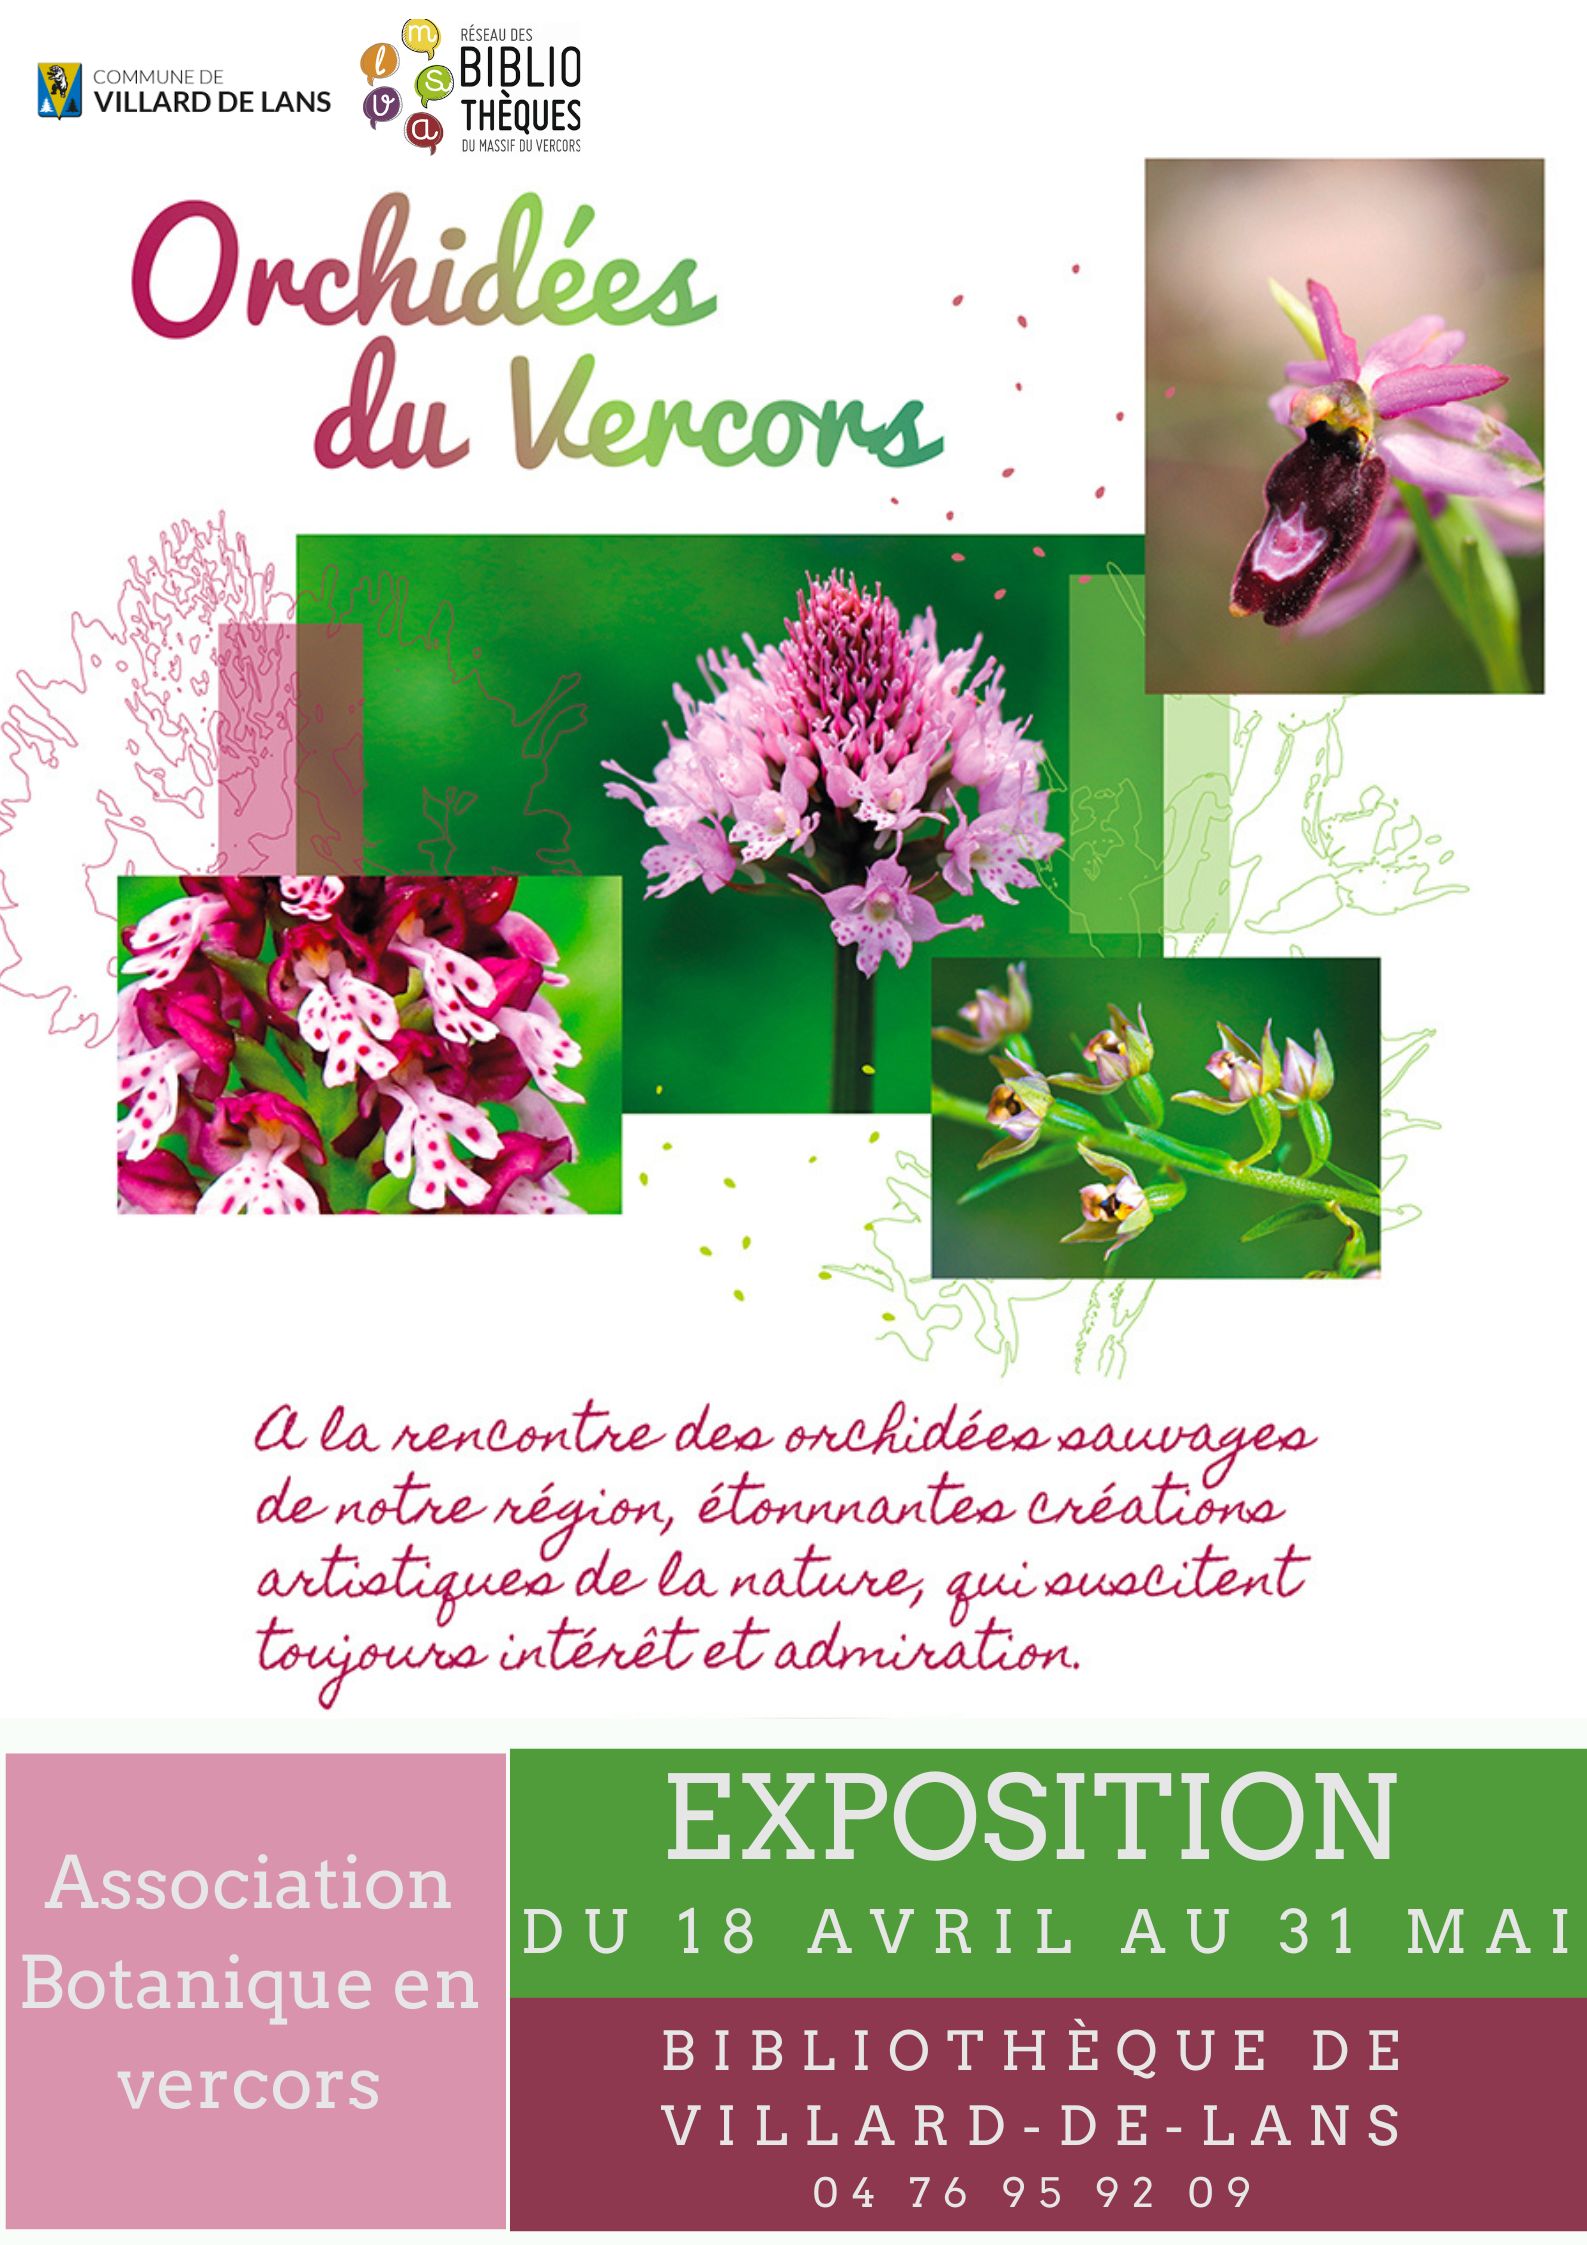  Exposition "Orchidées en Vercors" | du 18 avril au 31 mai 